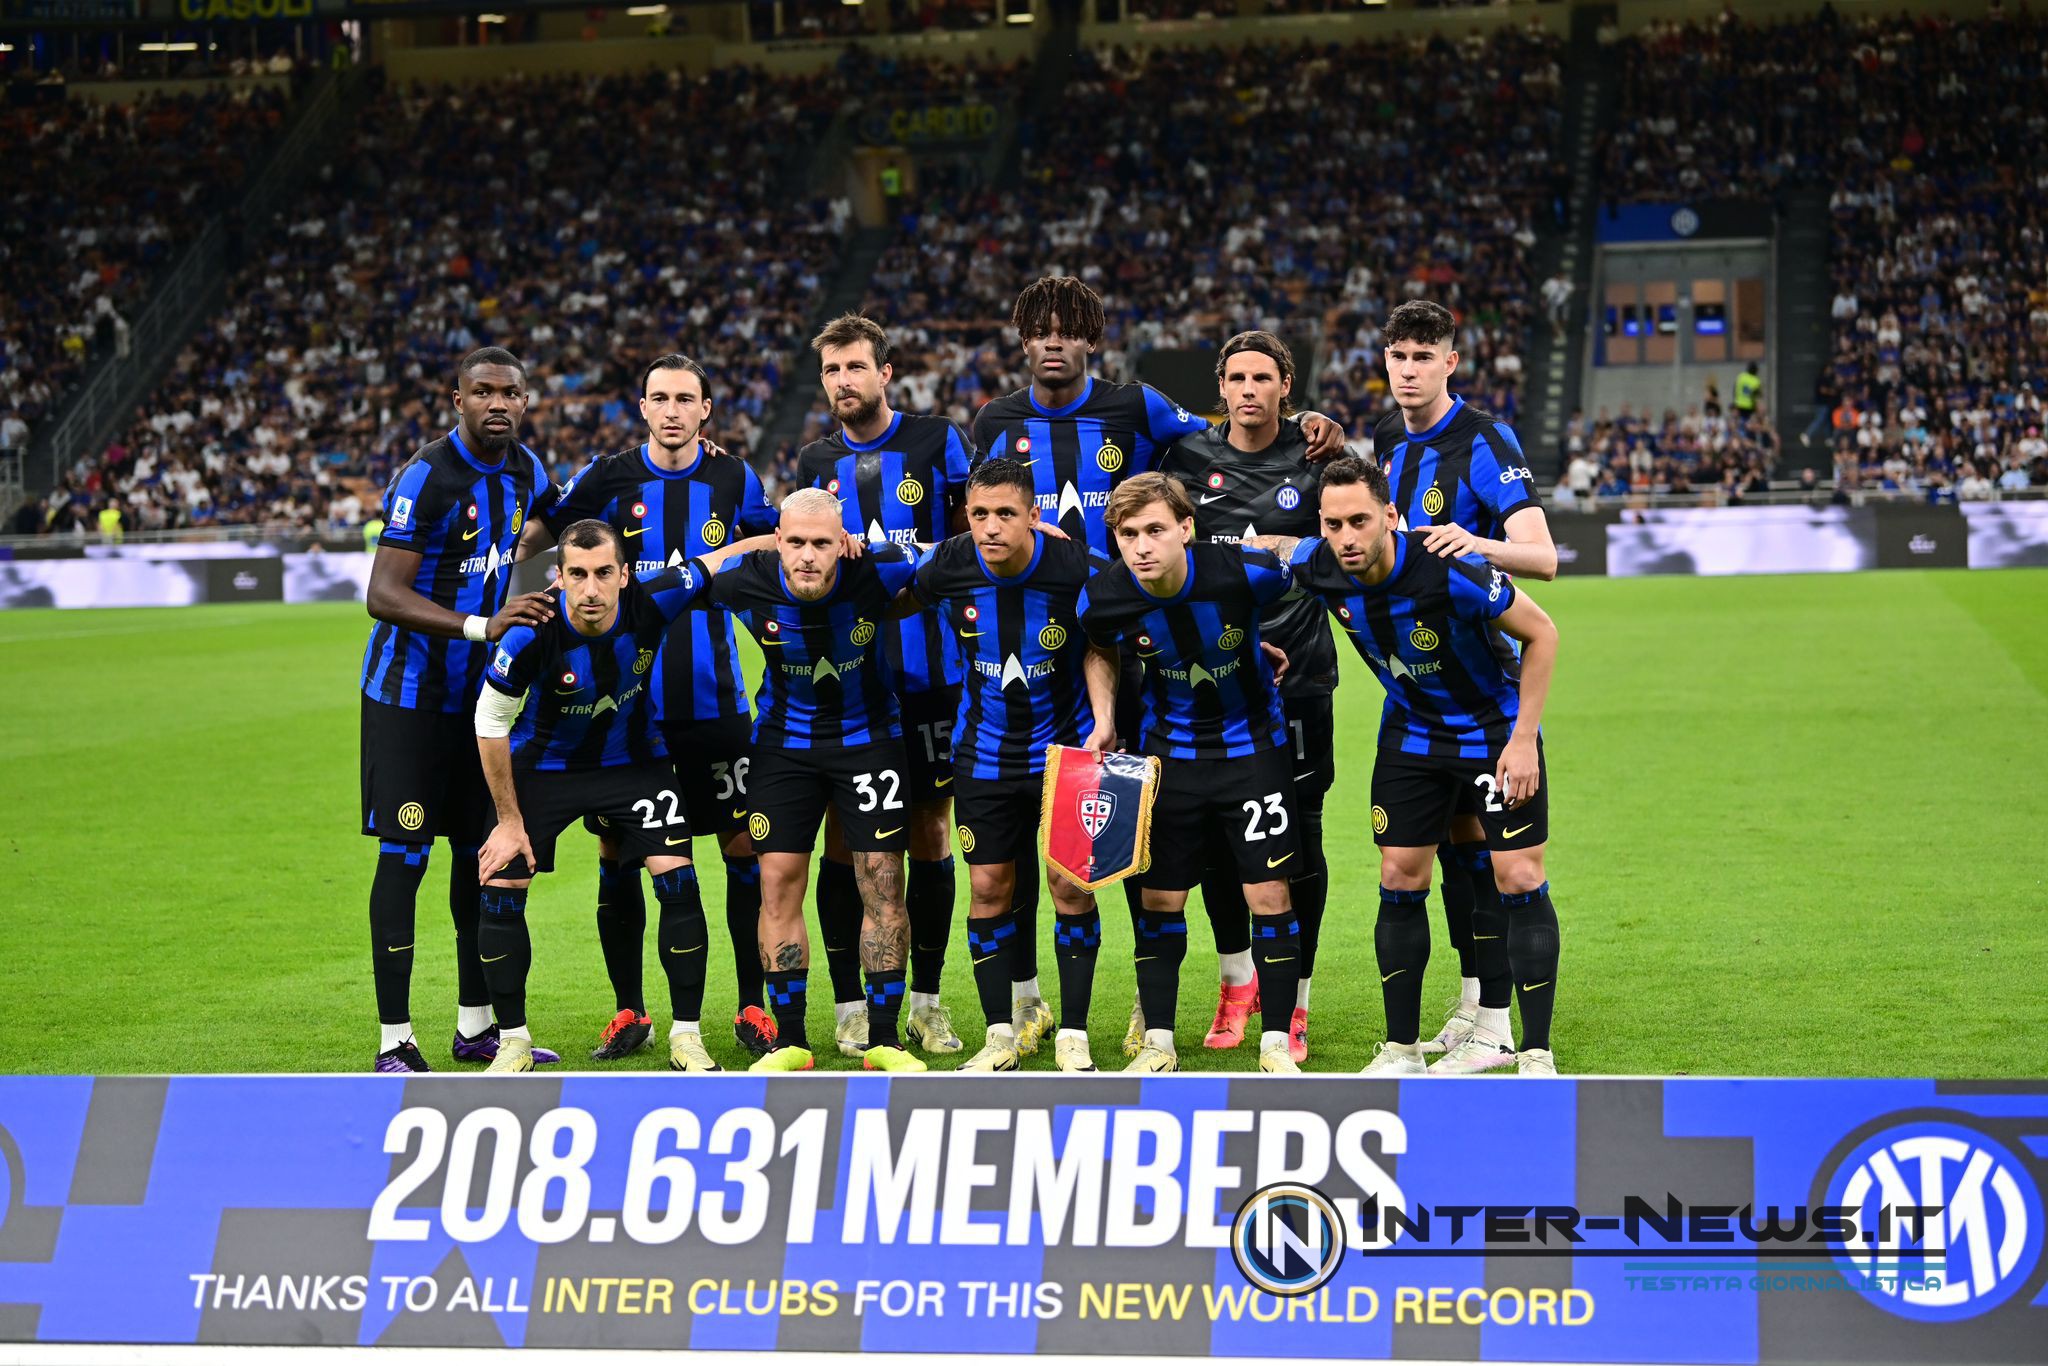 FOTO – Serie A, miglior 11 della 32ª giornata: presente 1 dell’Inter